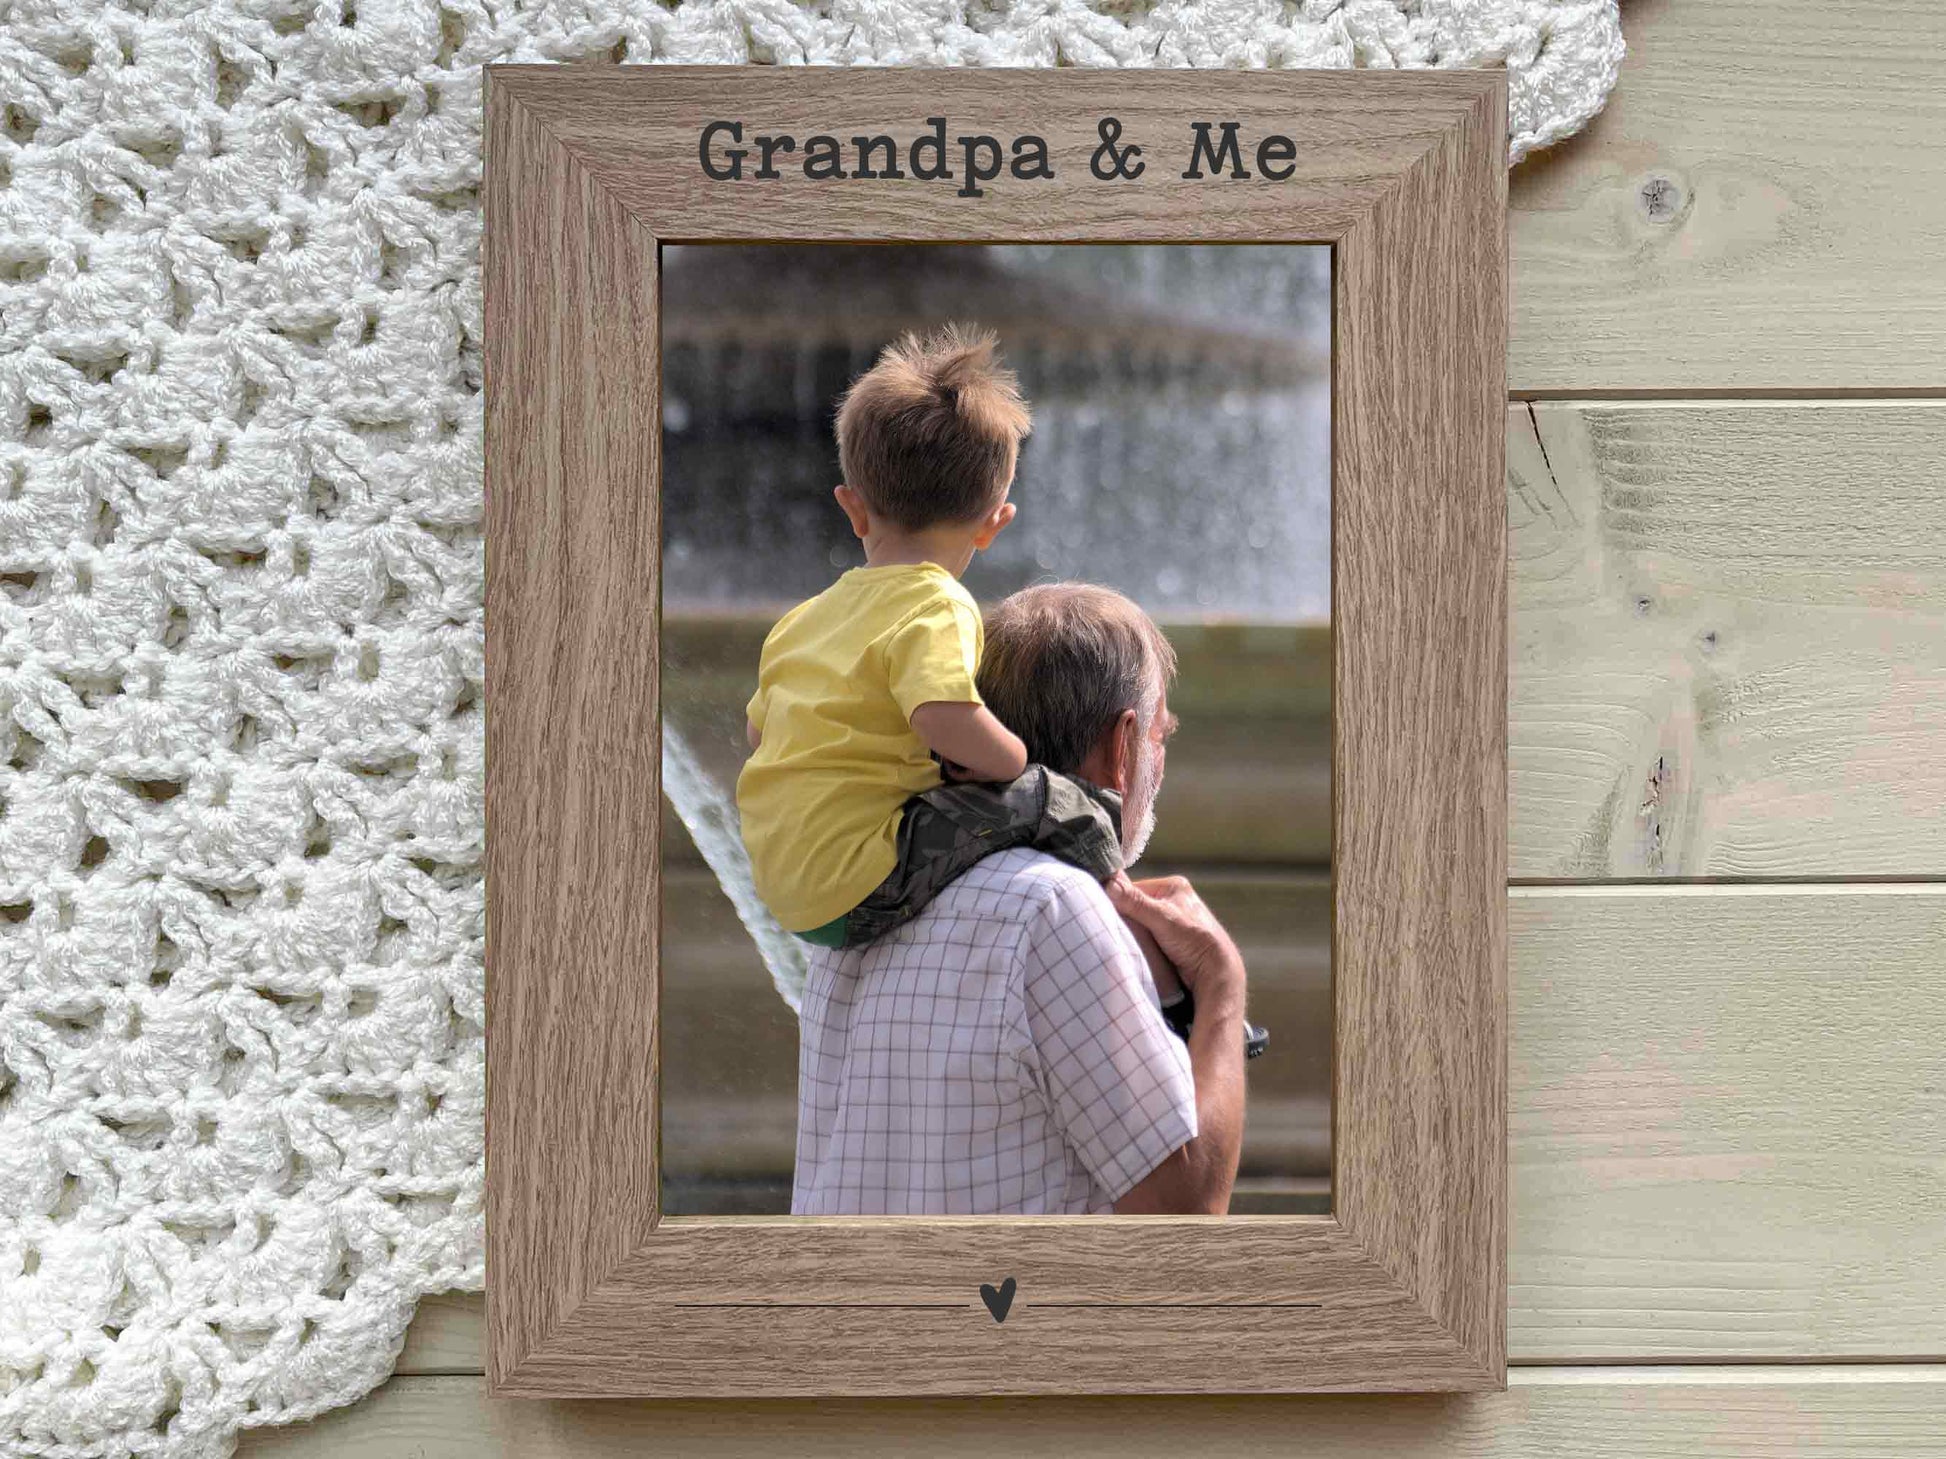 Grandpa Gramps Granda engraved Phot Frame Gift